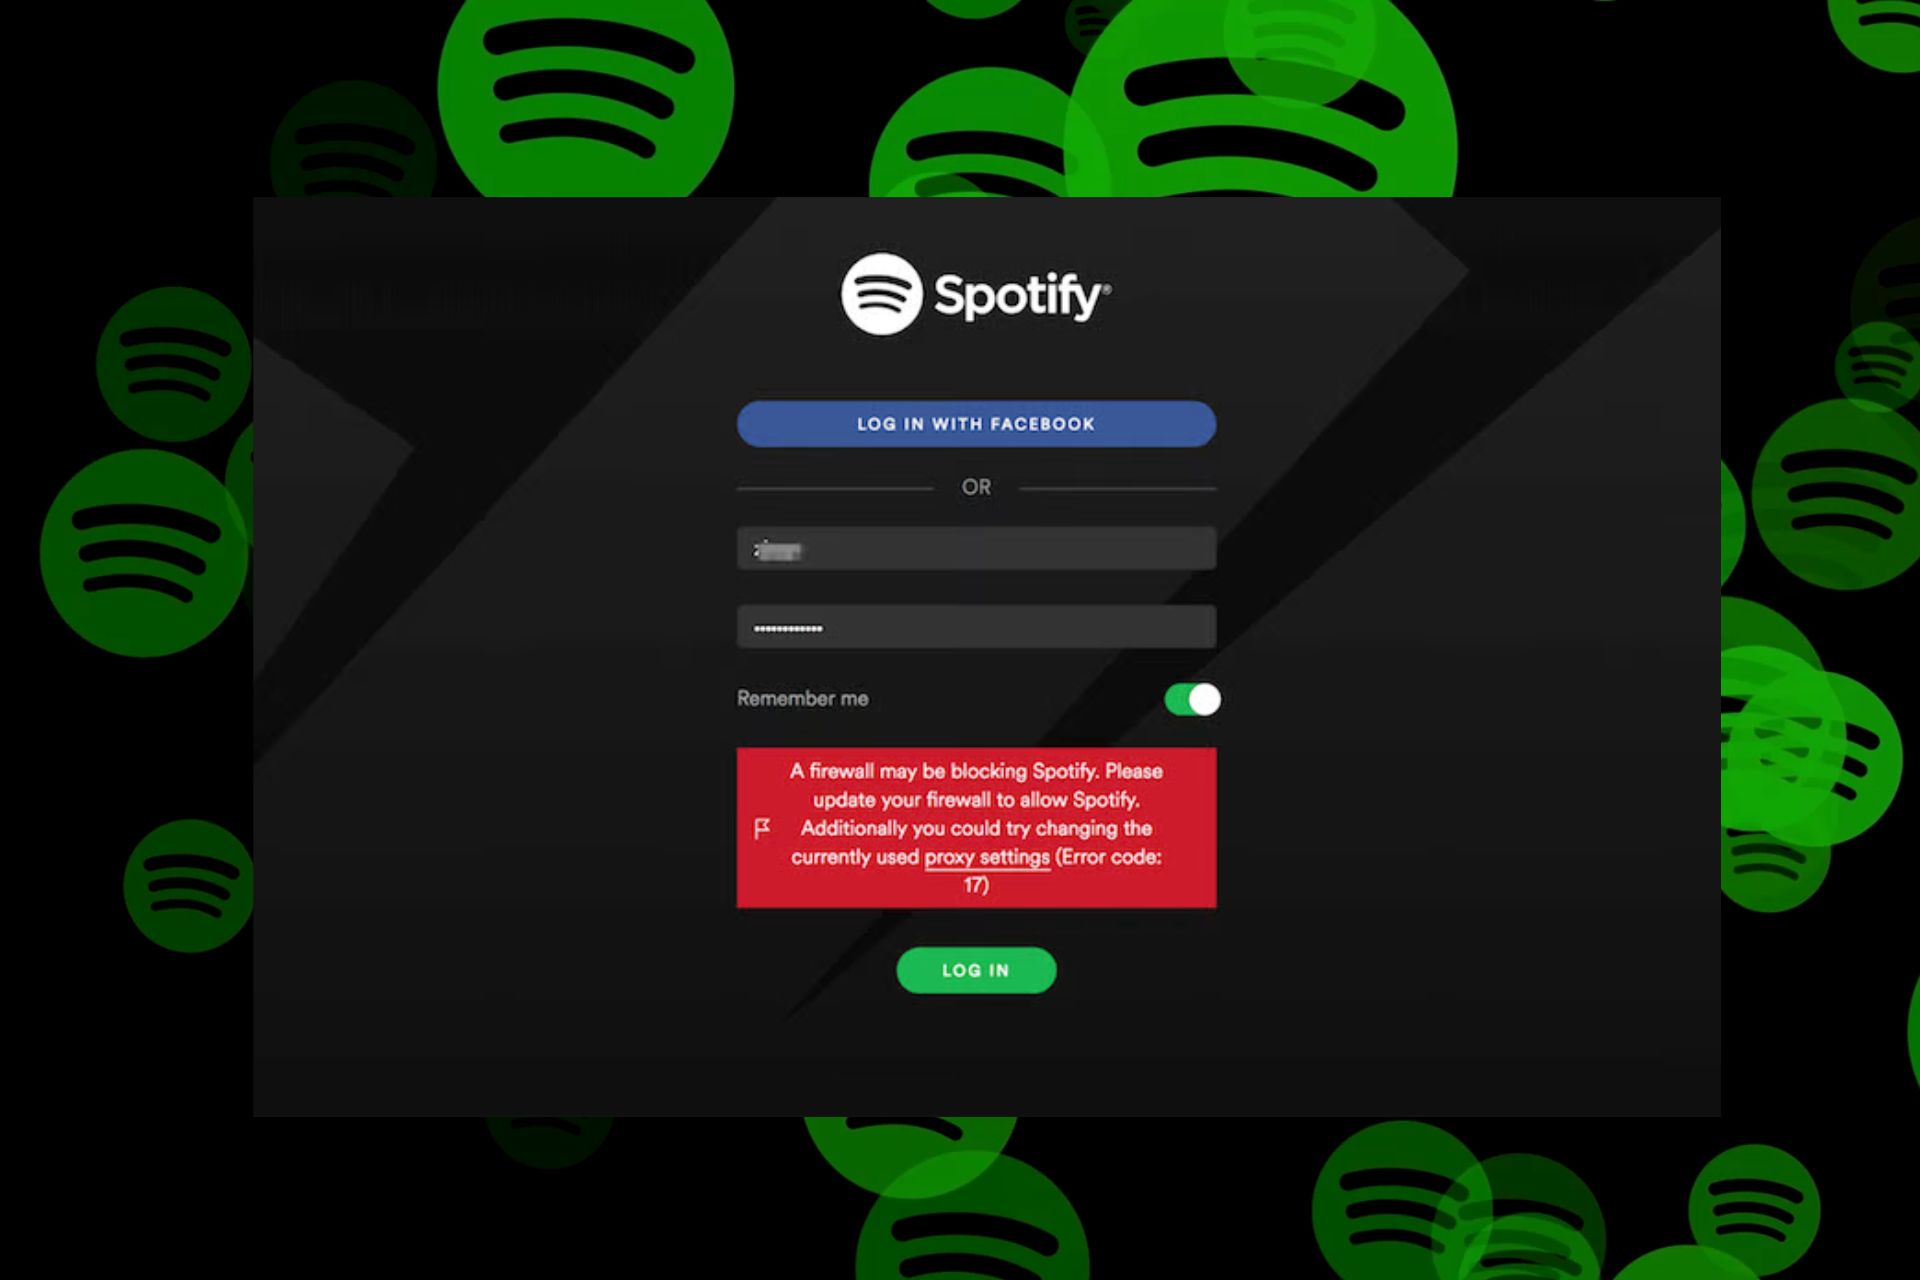 a firewall may be blocking Spotify